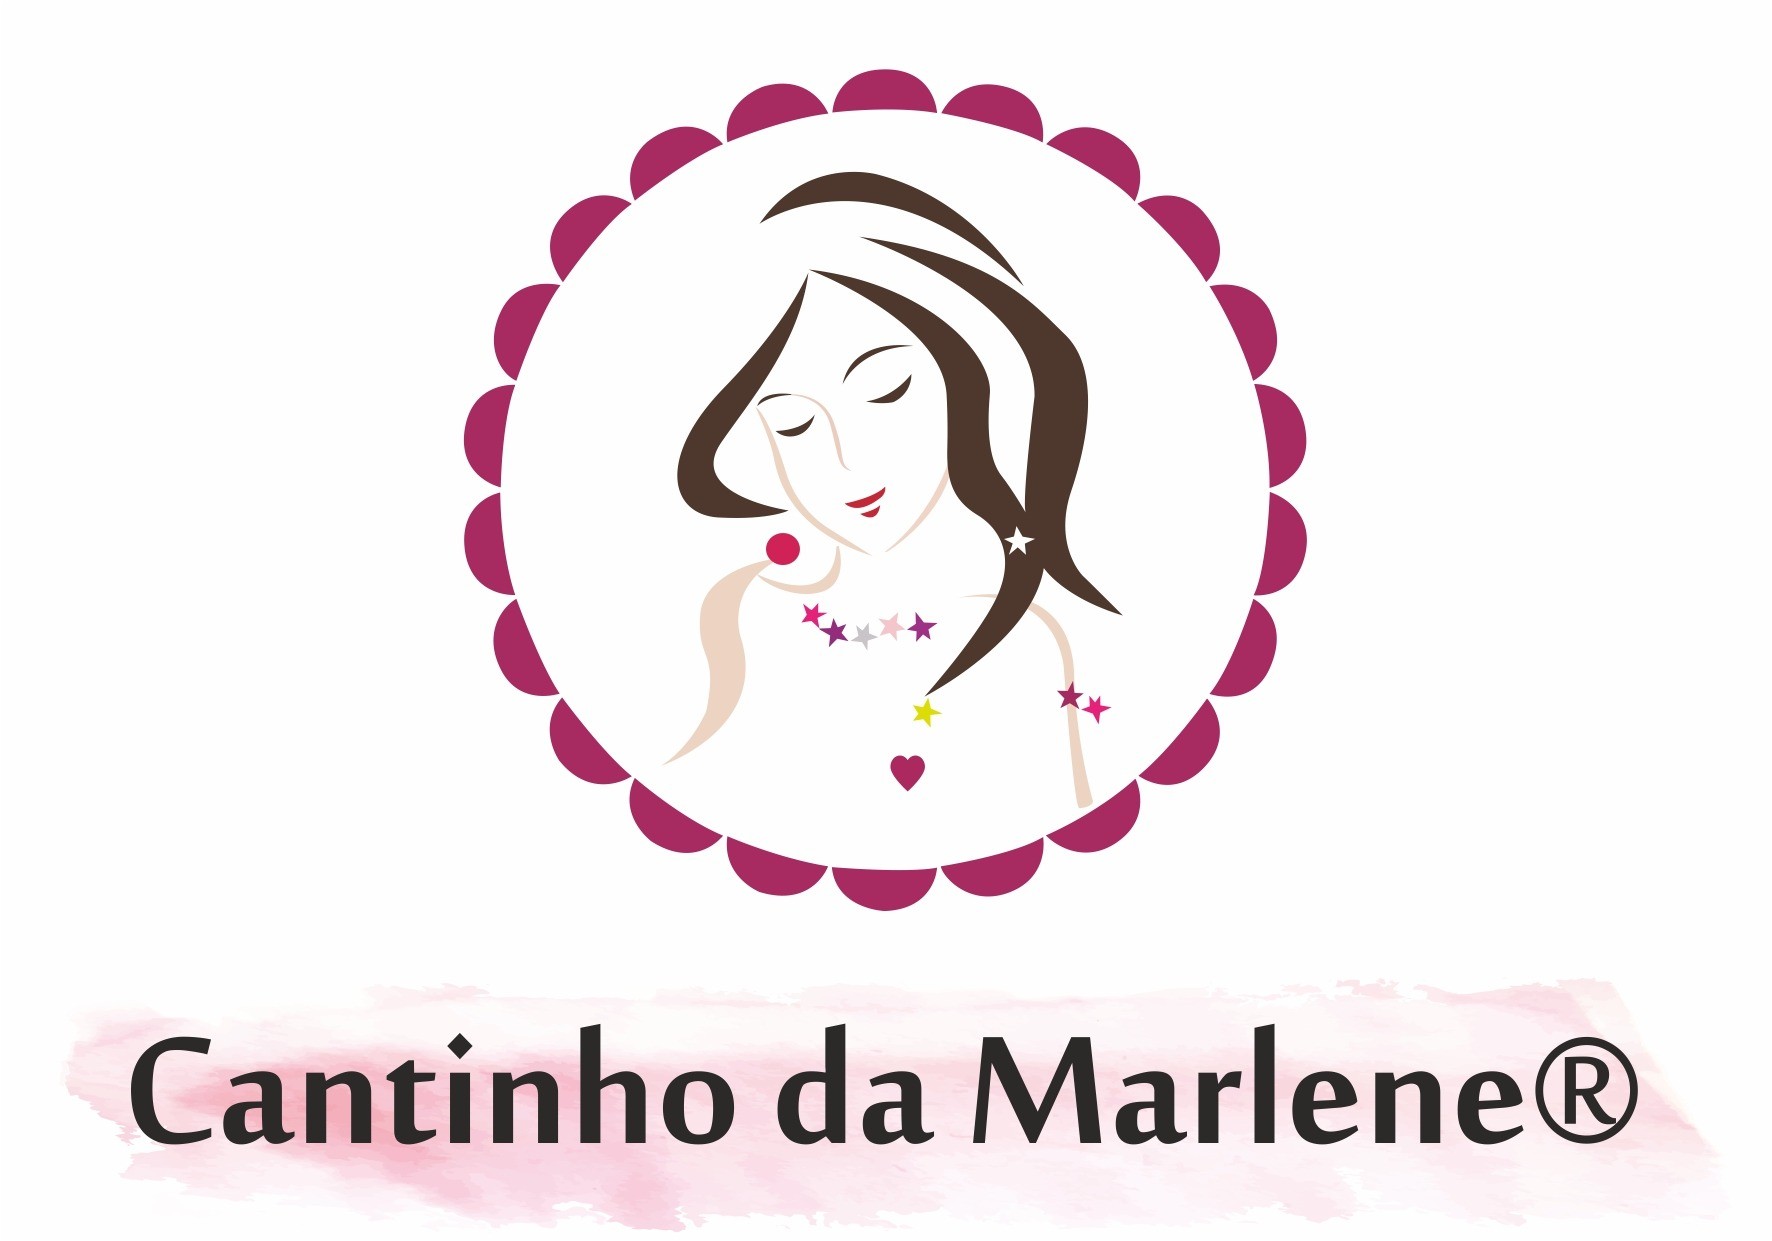 CANTINHO DA MARLENE